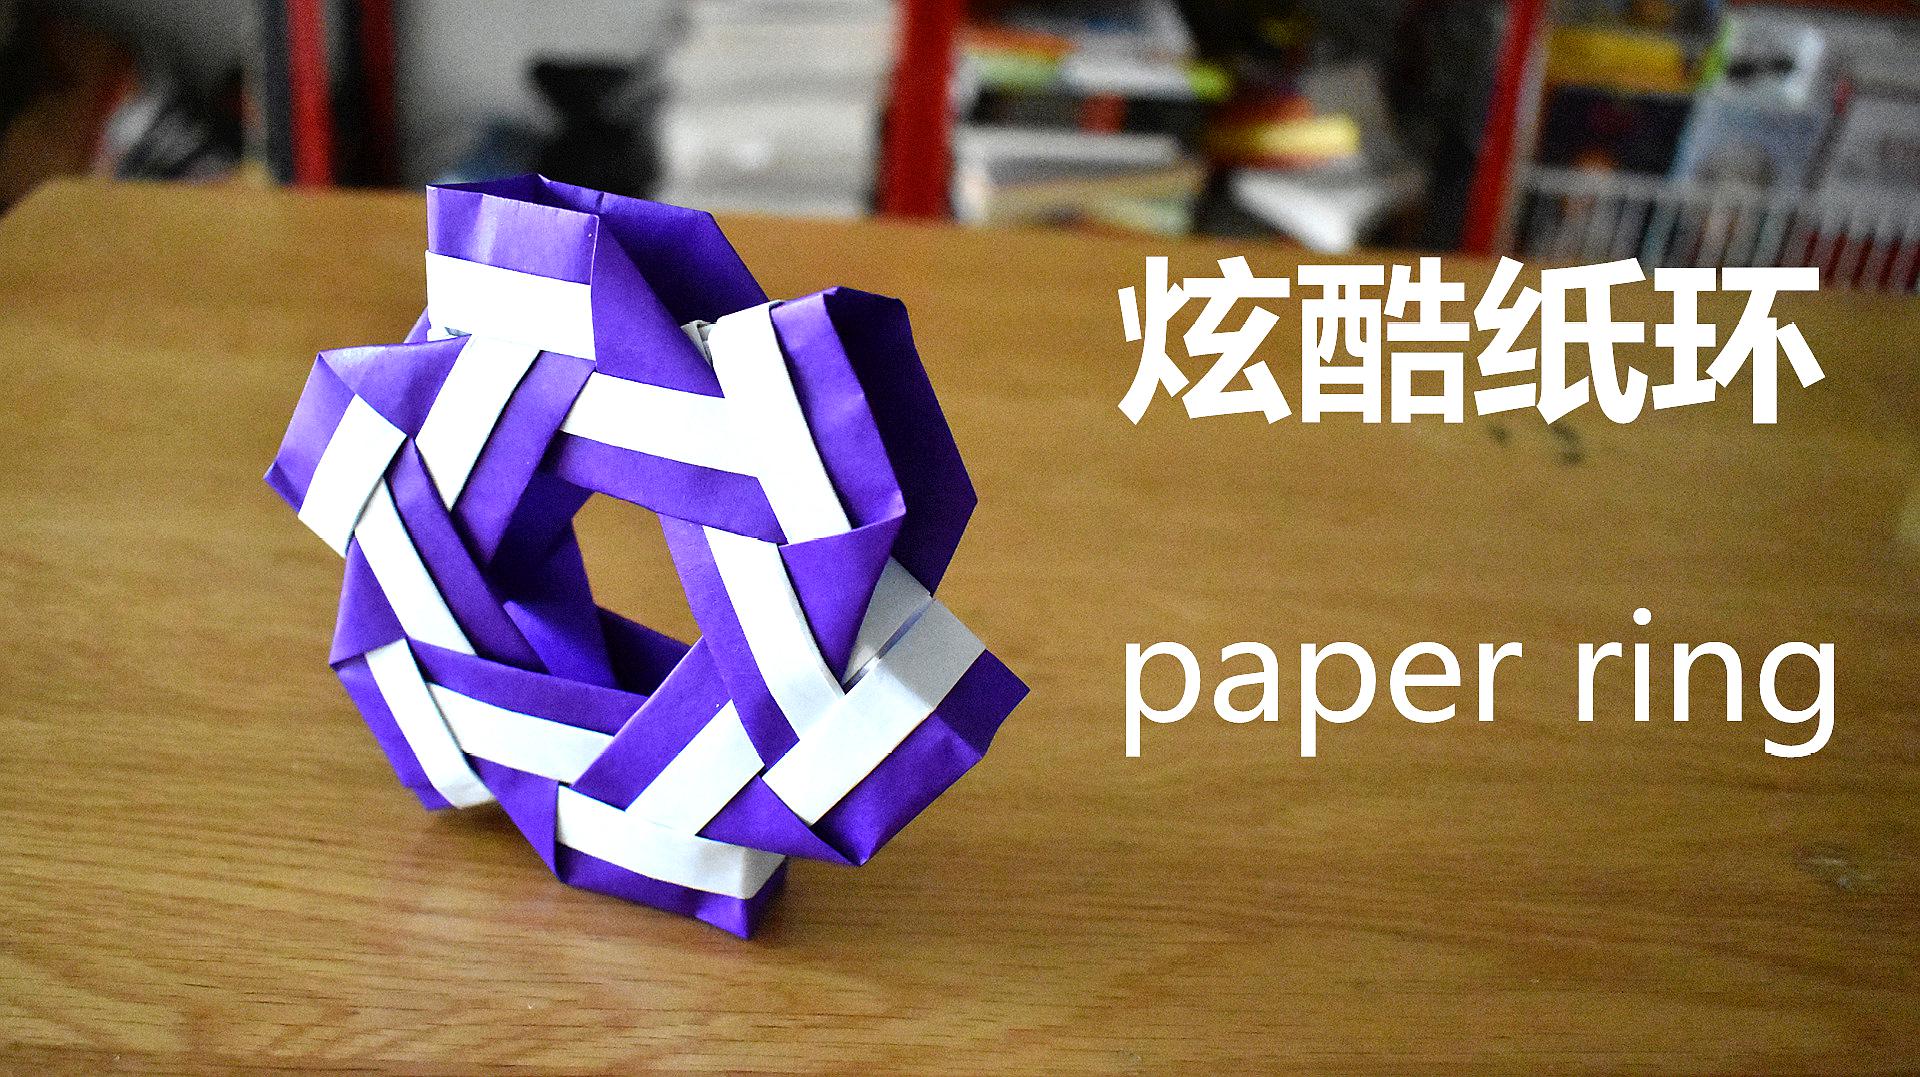 折纸教程:教大家做一个炫酷的纸环,简单又好玩